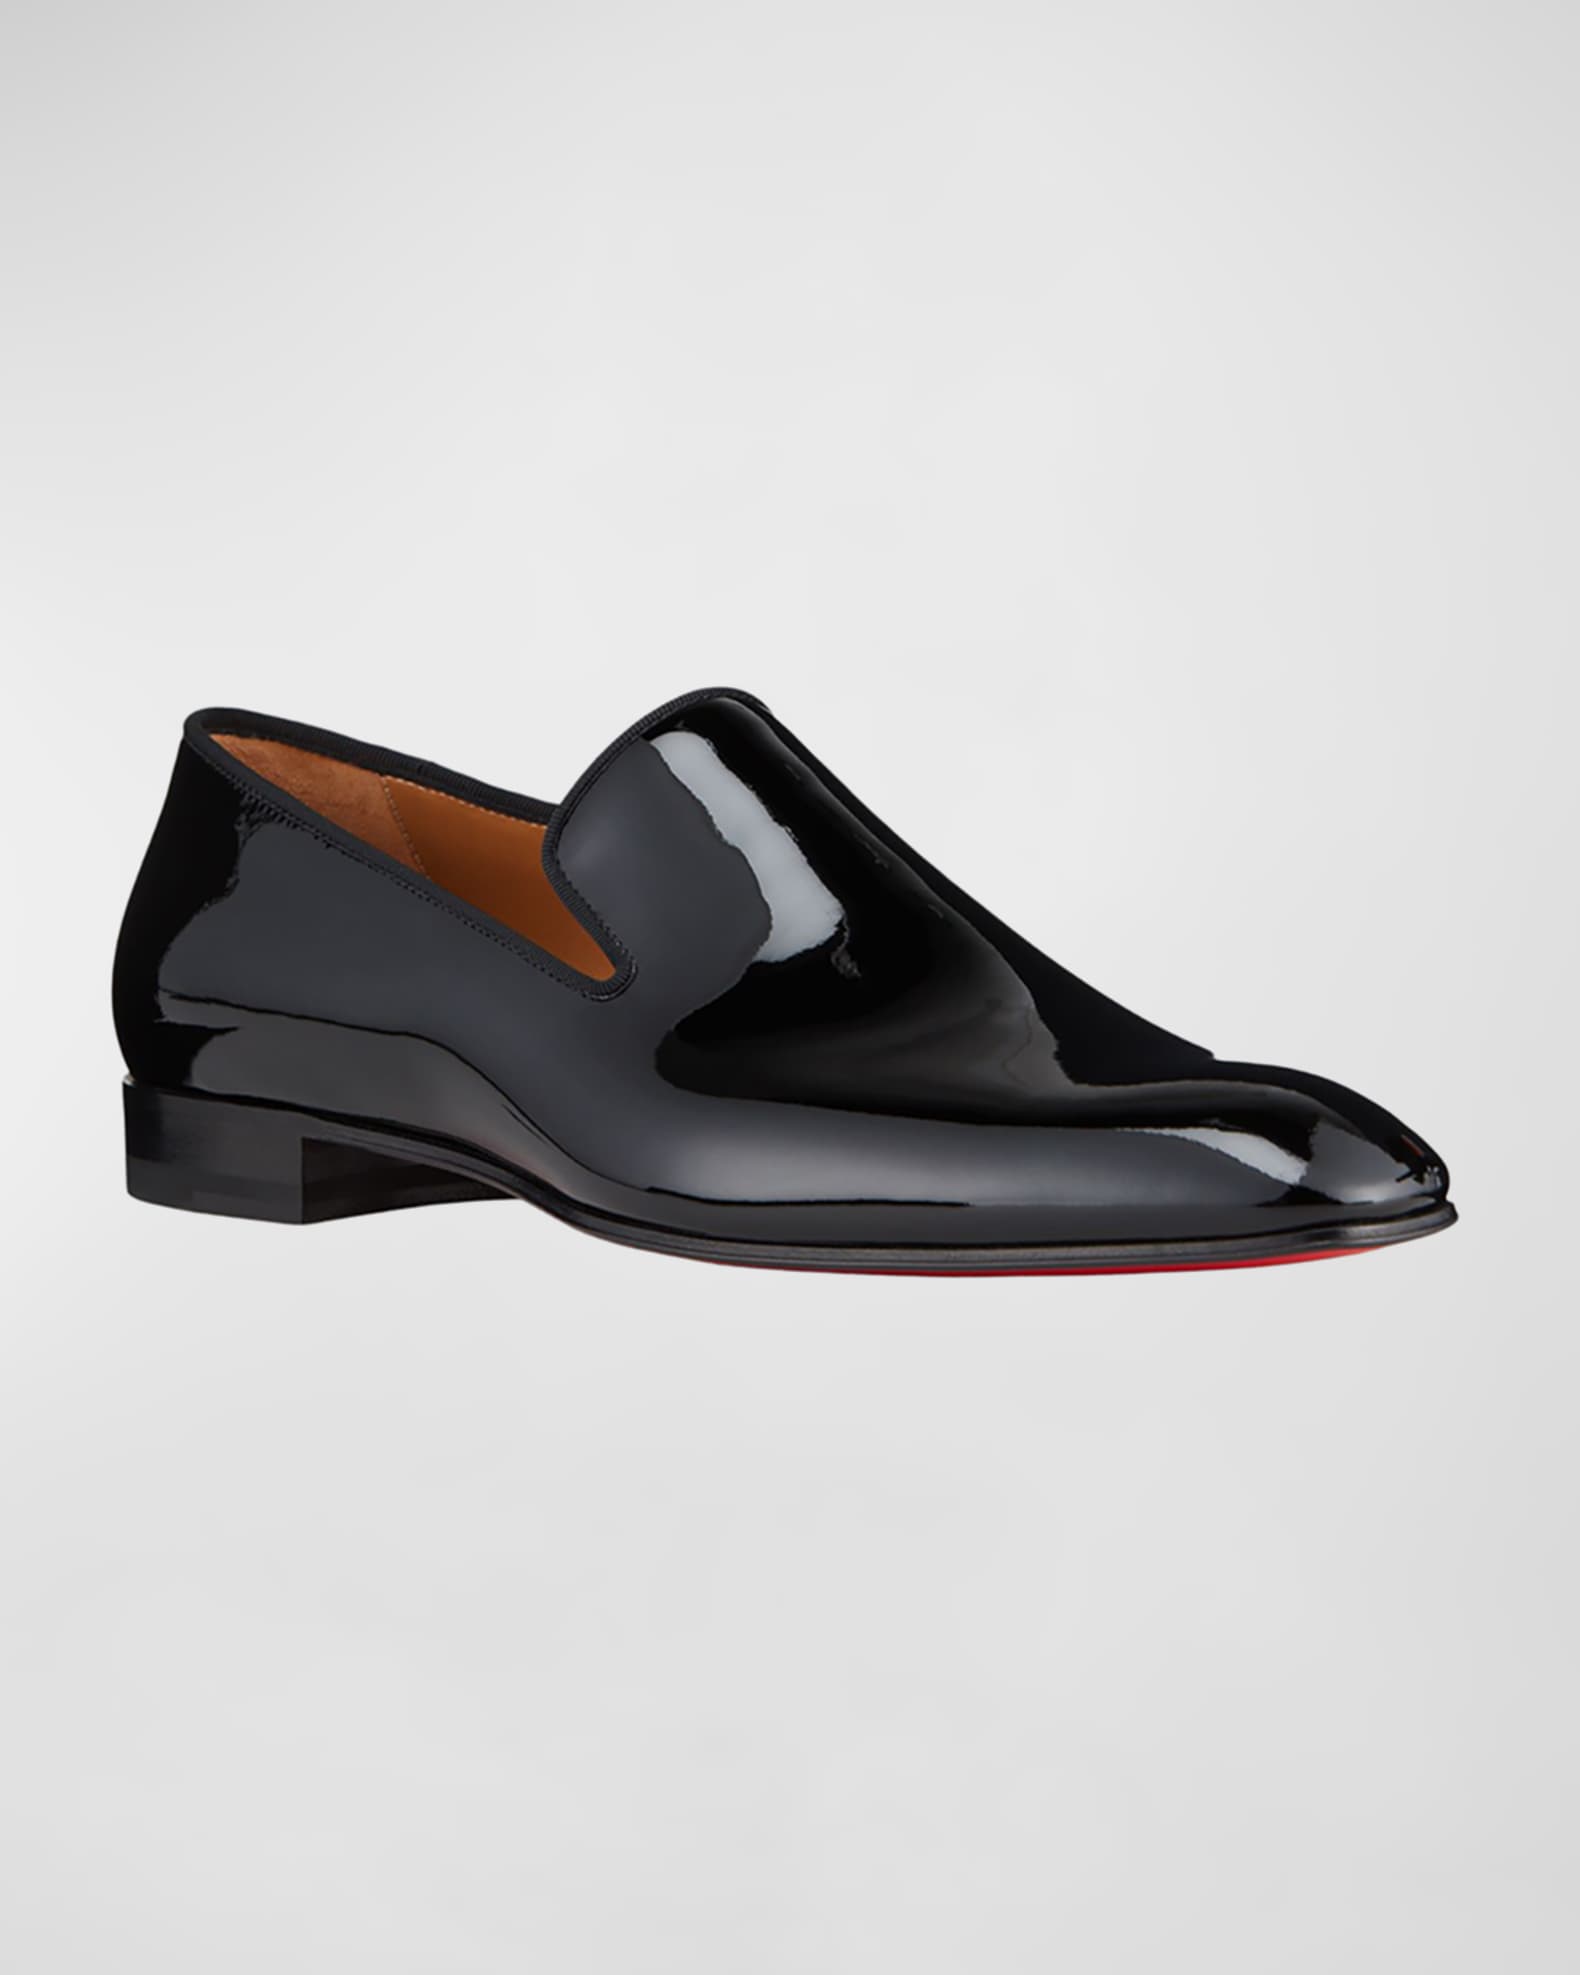 Væve belastning Besættelse Christian Louboutin Men's Dandelion Patent Leather Loafers | Neiman Marcus